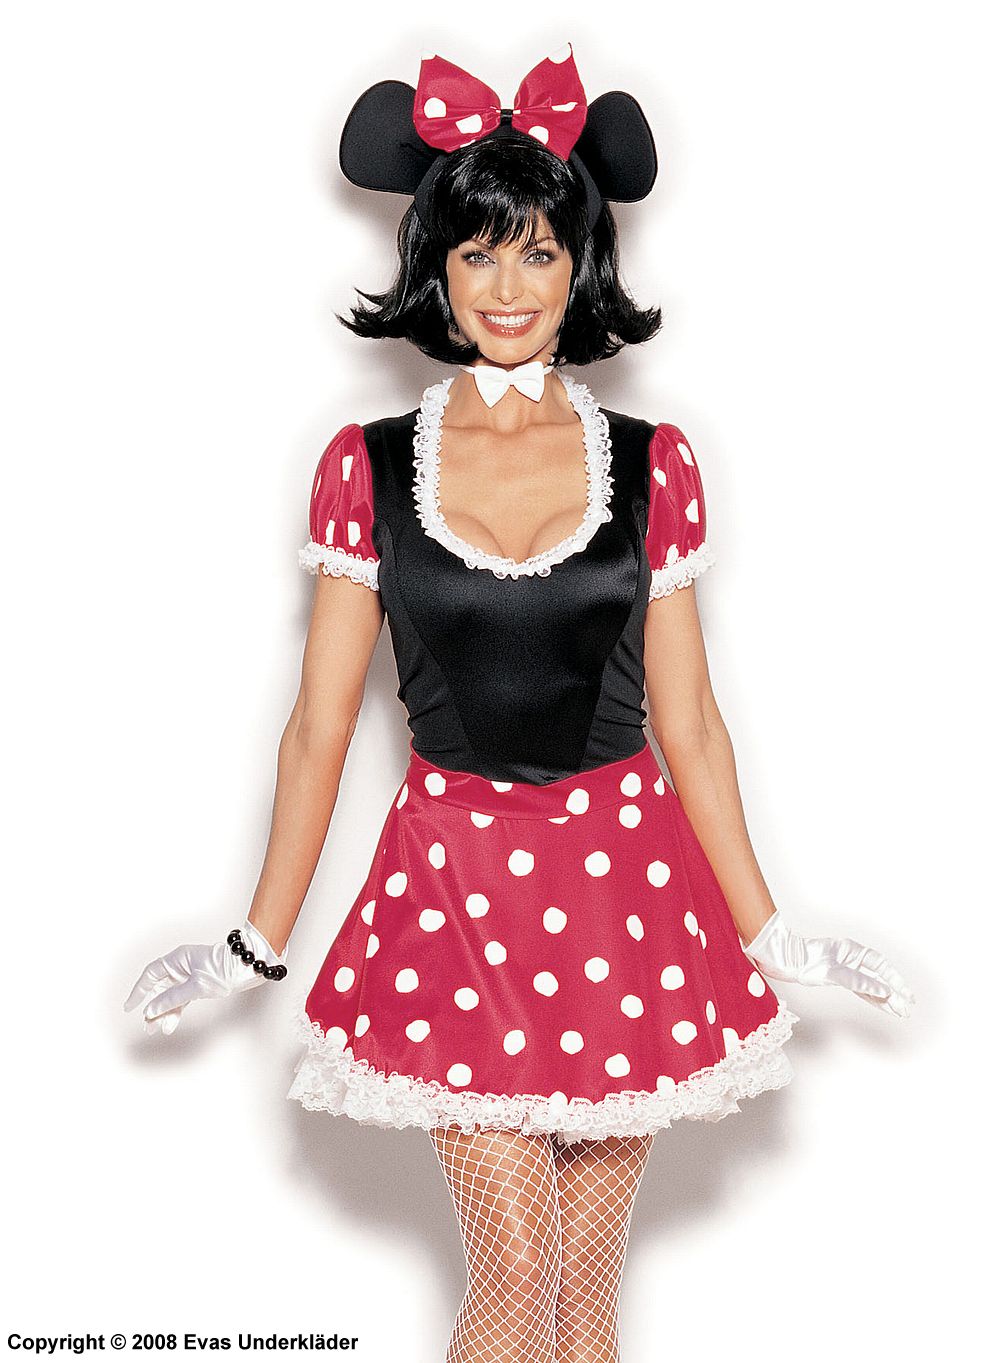 Minnie costume